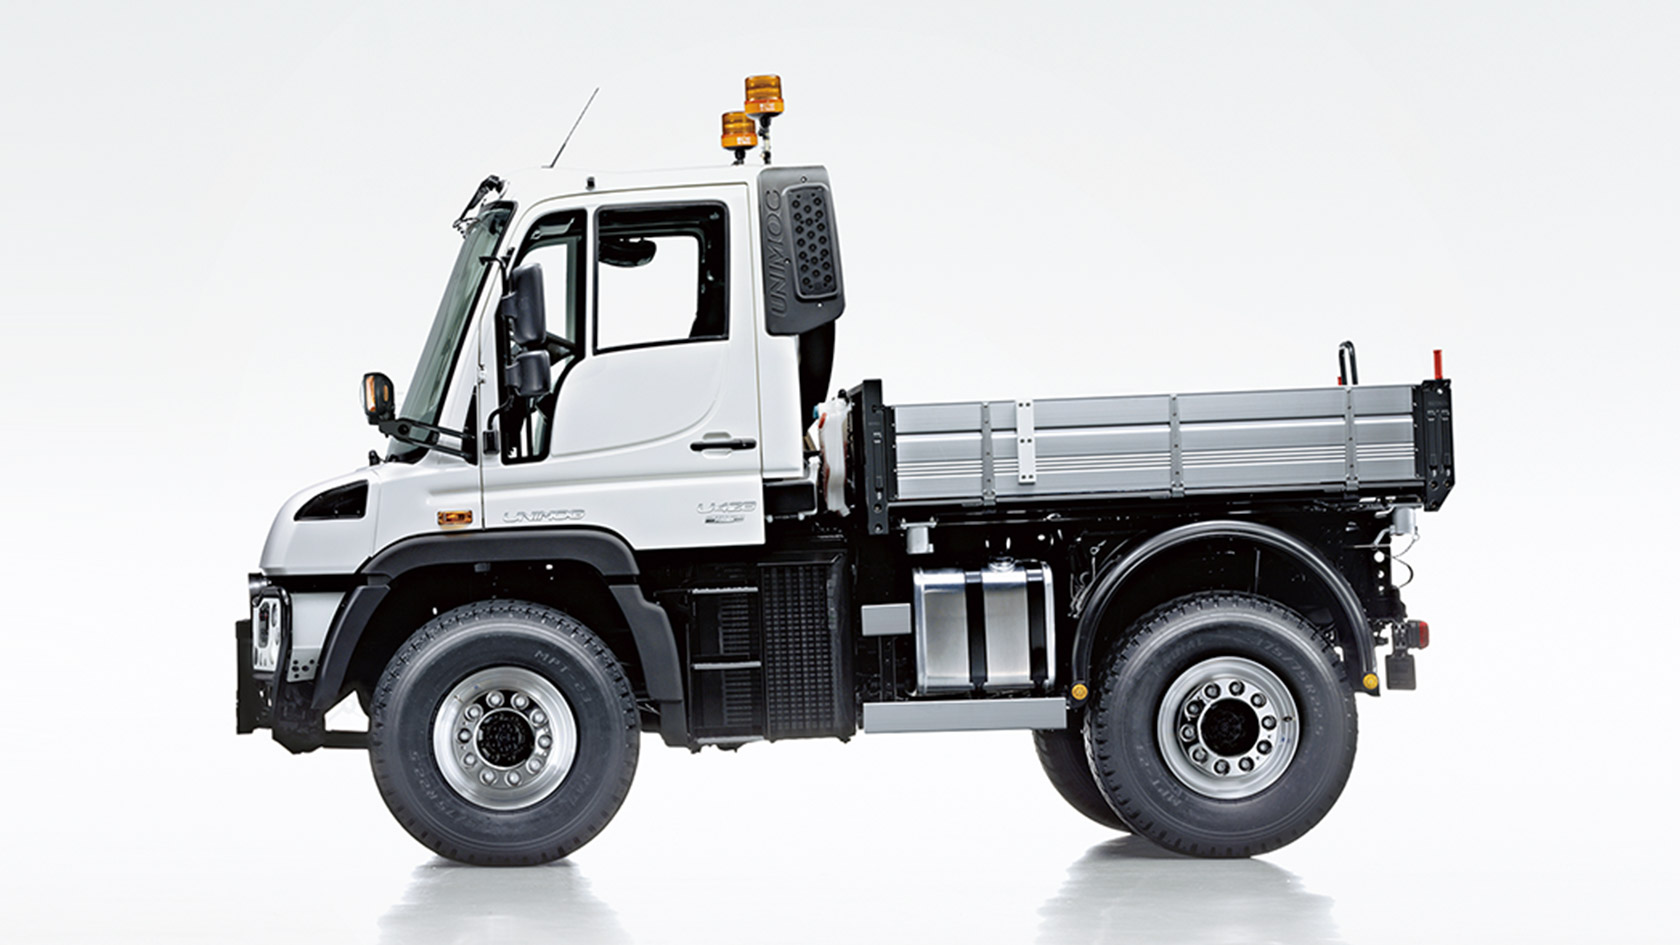 Unimog implement carrier: Technical data - Mercedes-Benz Trucks - Trucks  you can trust